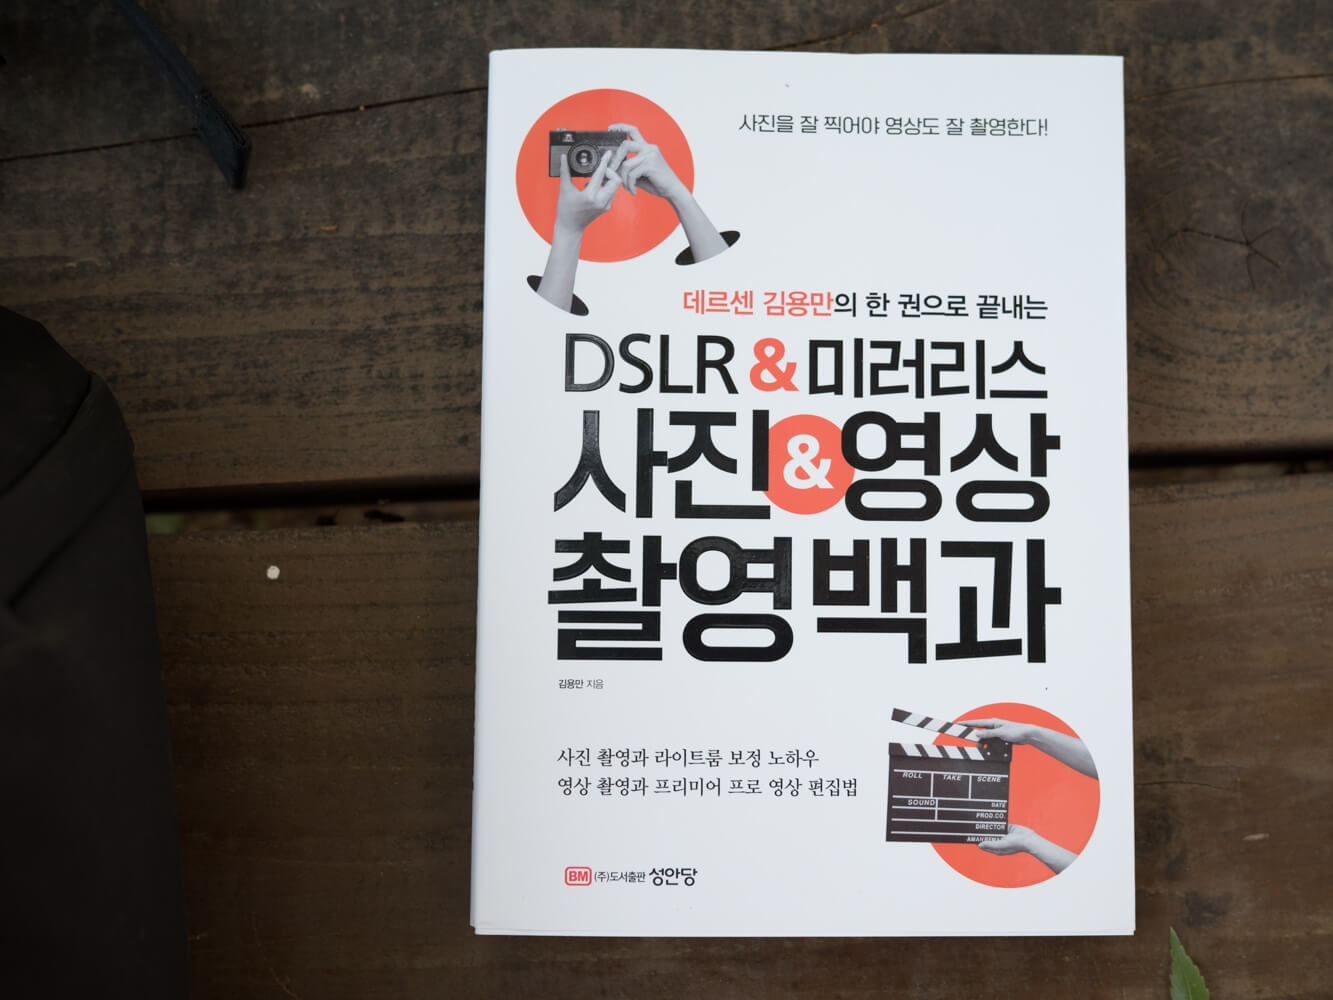 데르센 김용만의 한 권으로 끝내는 DSLR 미러리스 사진 영상 촬영백과